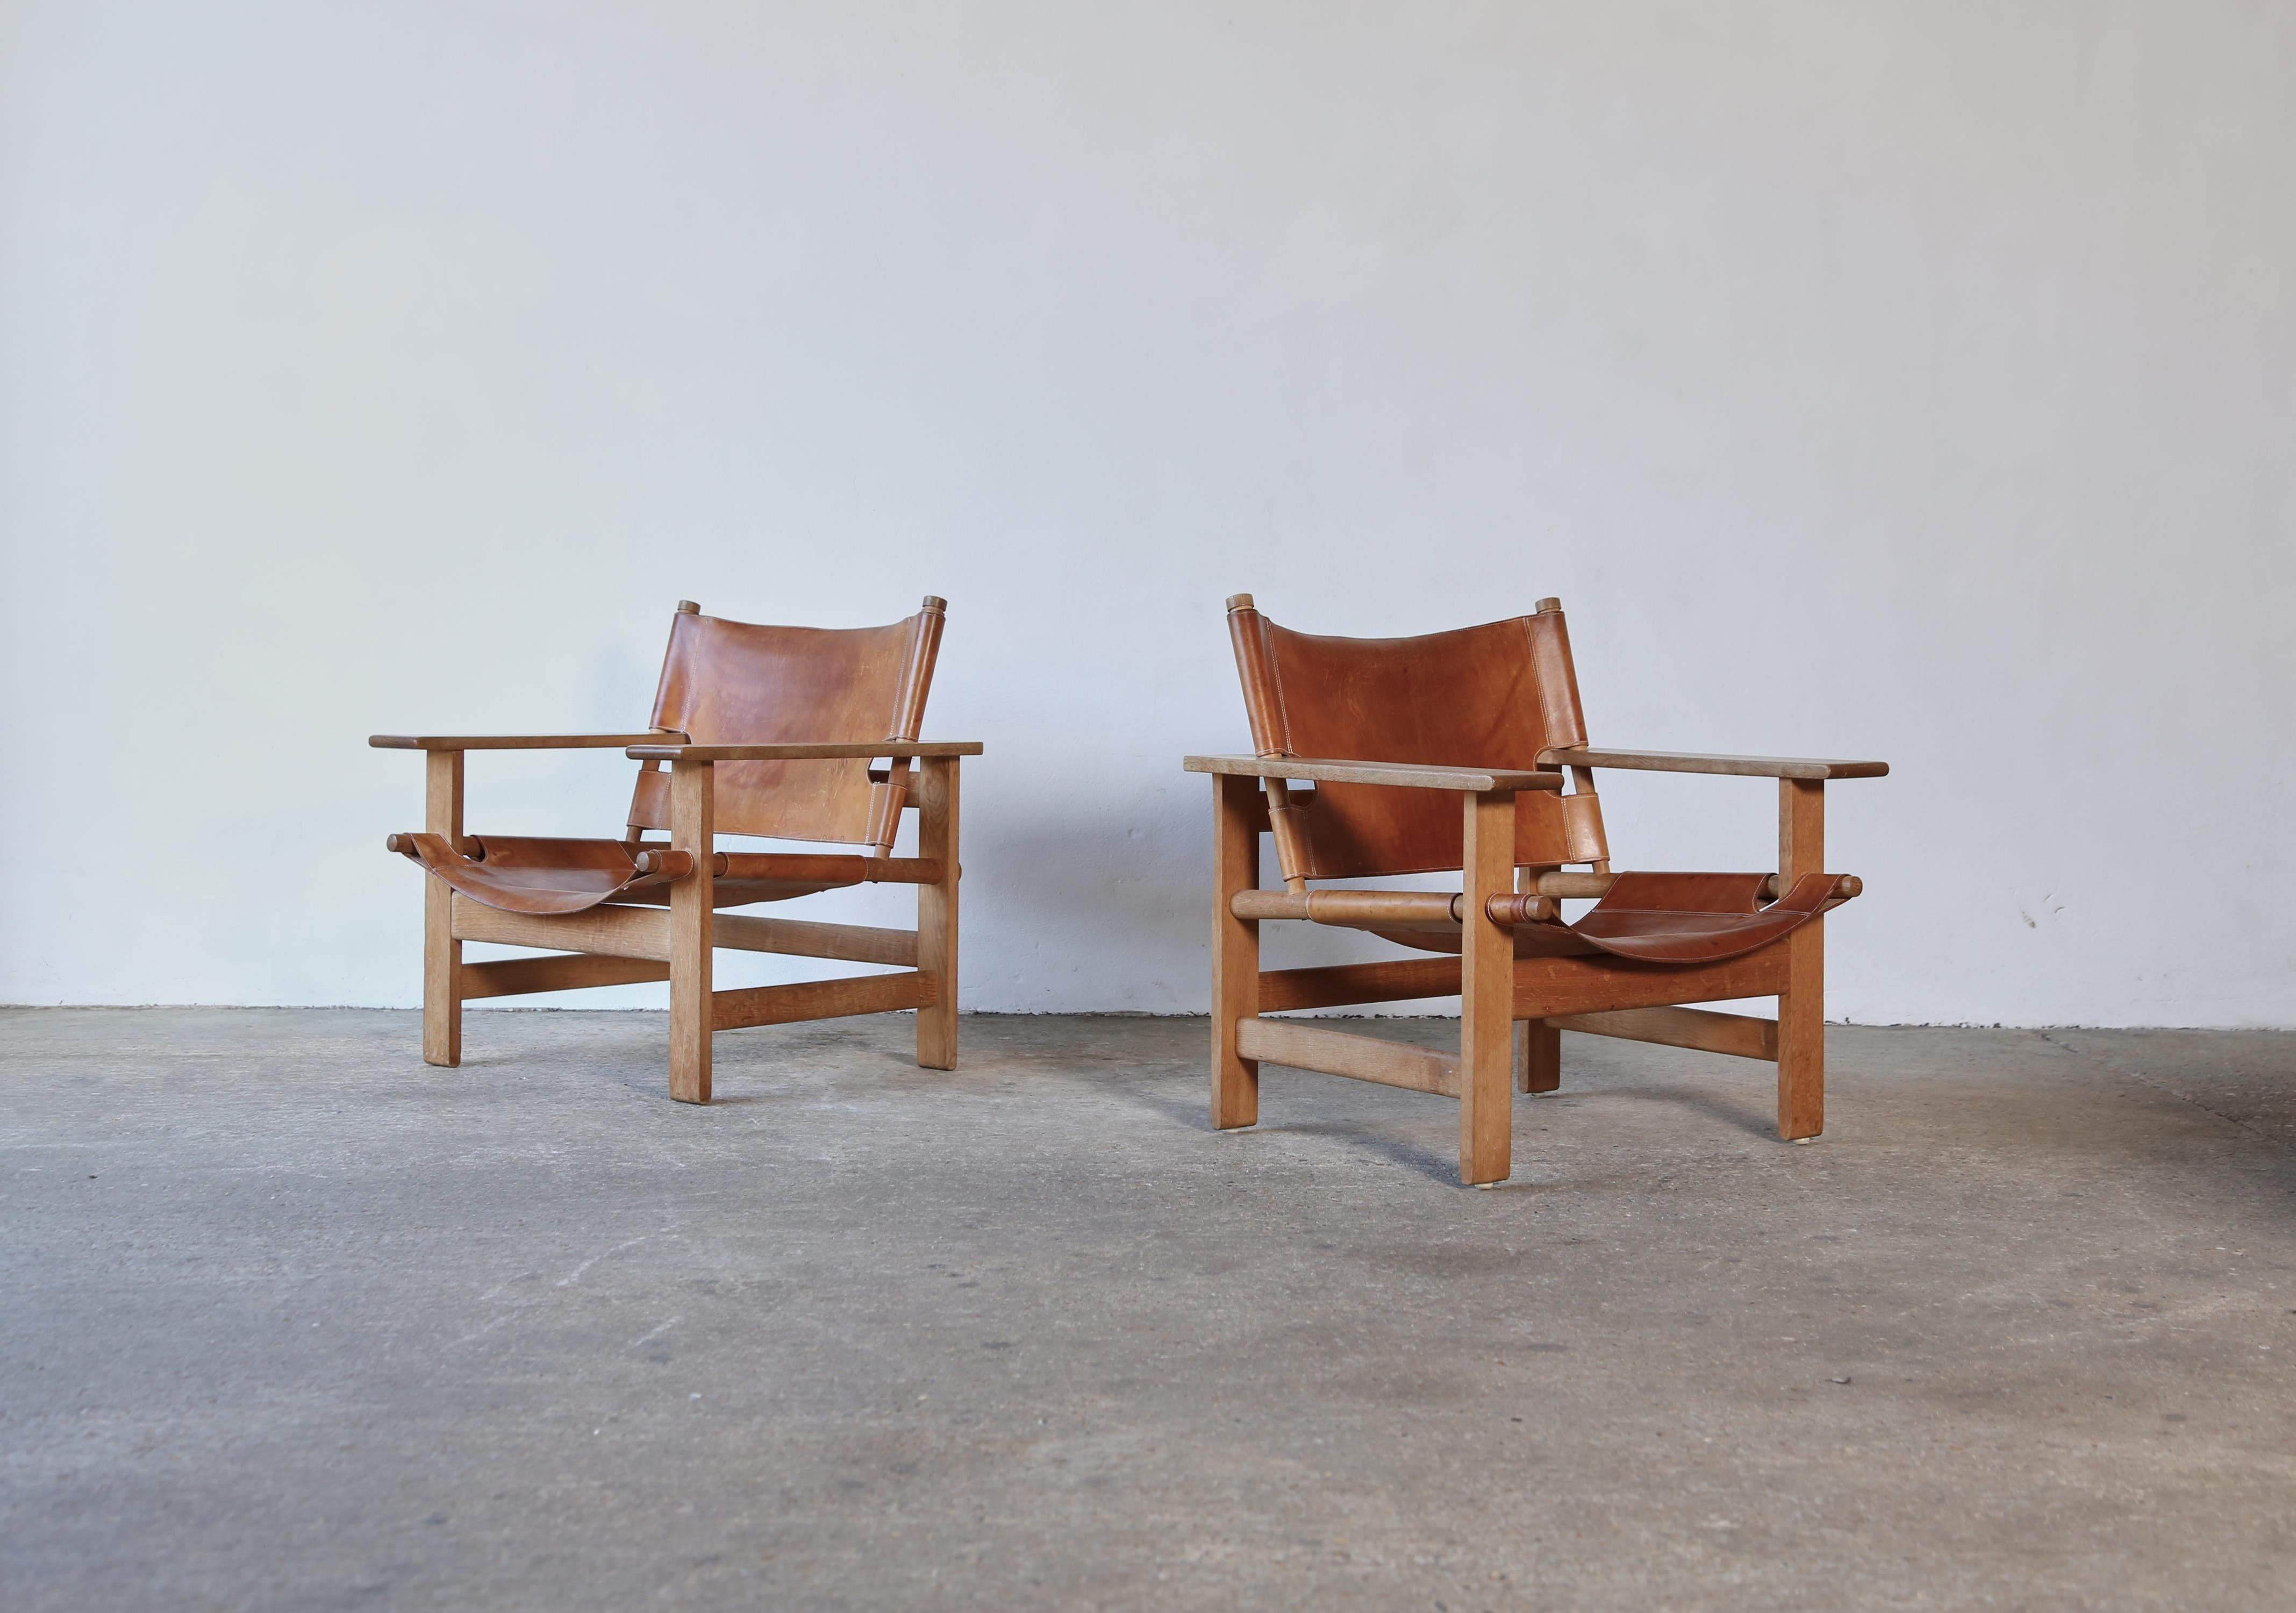 Äußerst seltene Borge Mogensen Modell 2231 Stühle, Dänemark, 1960er Jahre. Original Leder und Eiche. Ursprünglicher Zustand. Unglaublicher Ton und Patina.



